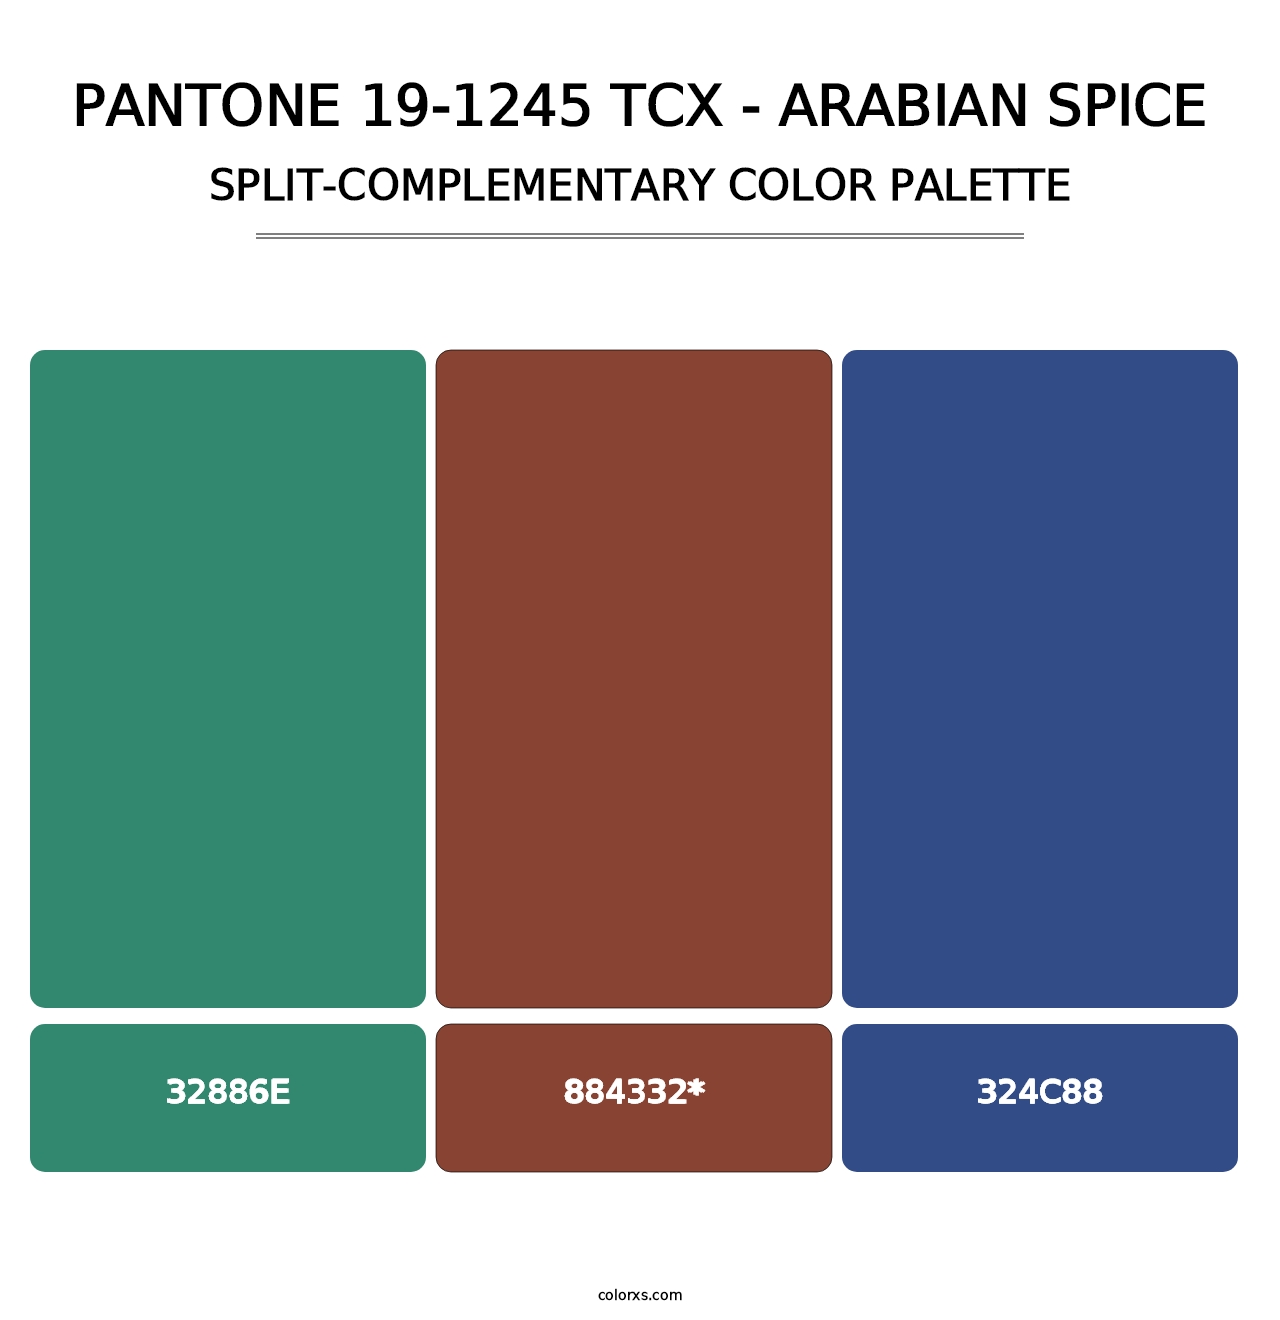 PANTONE 19-1245 TCX - Arabian Spice - Split-Complementary Color Palette